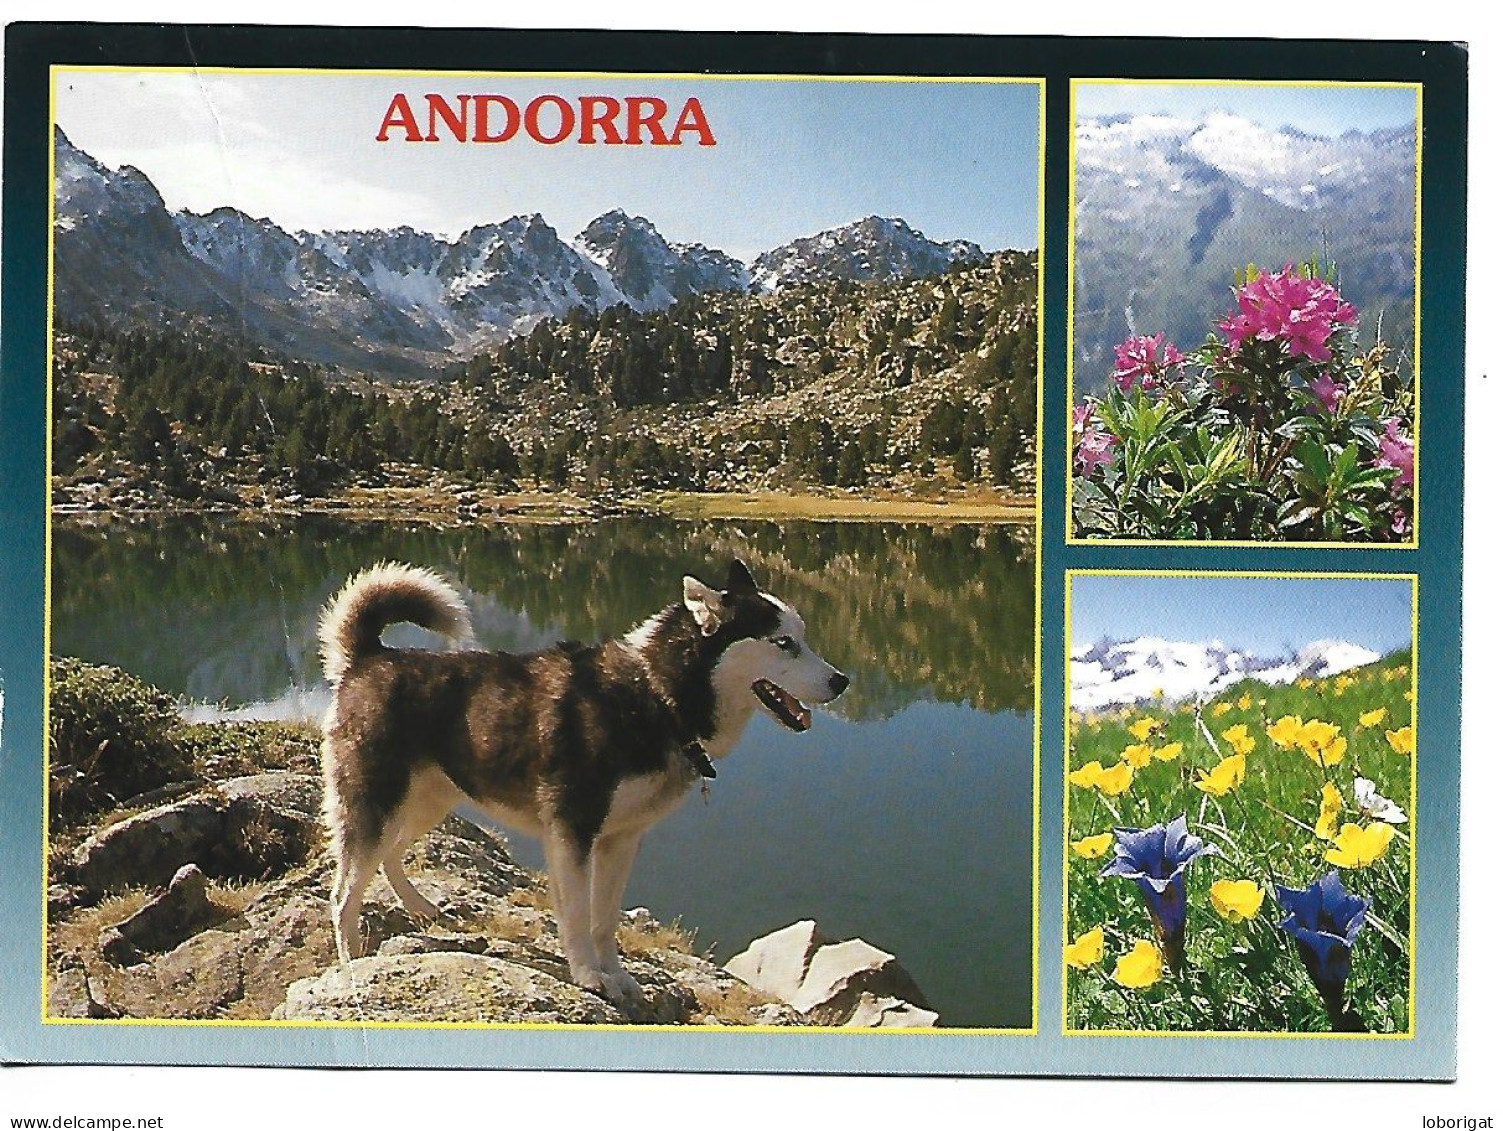 VALLS D'ANDORRA.- ANDORRA - Andorra